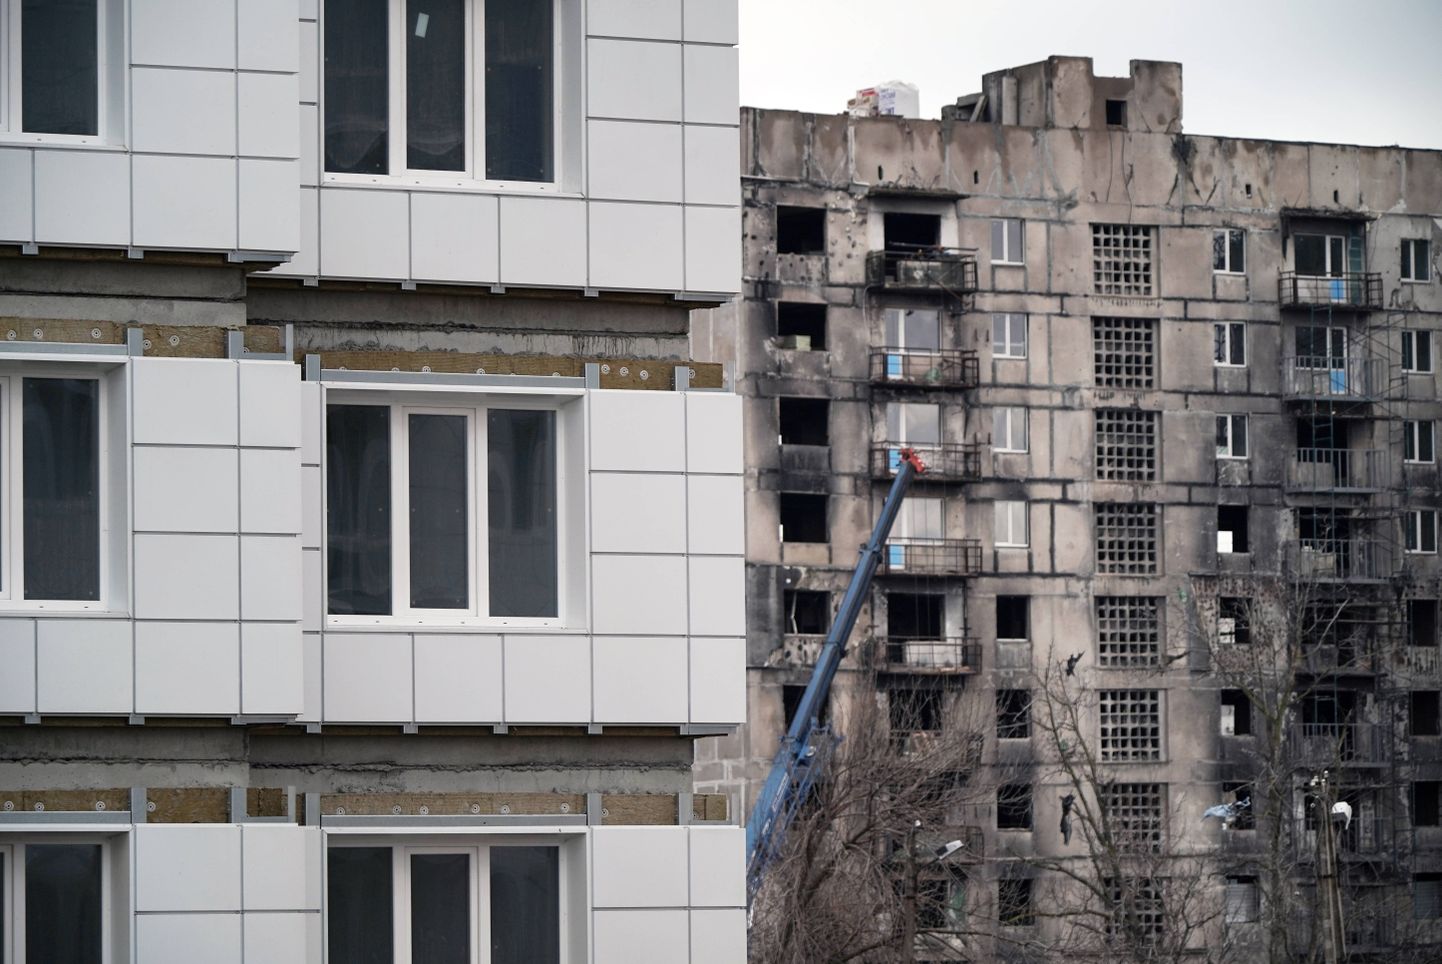 Sõjas kannatada saanud korrusmaja ja uus kortermaja Ukrainas Mariupolis, mis on alates 2022. aastast Vene vägede kontrolli all.